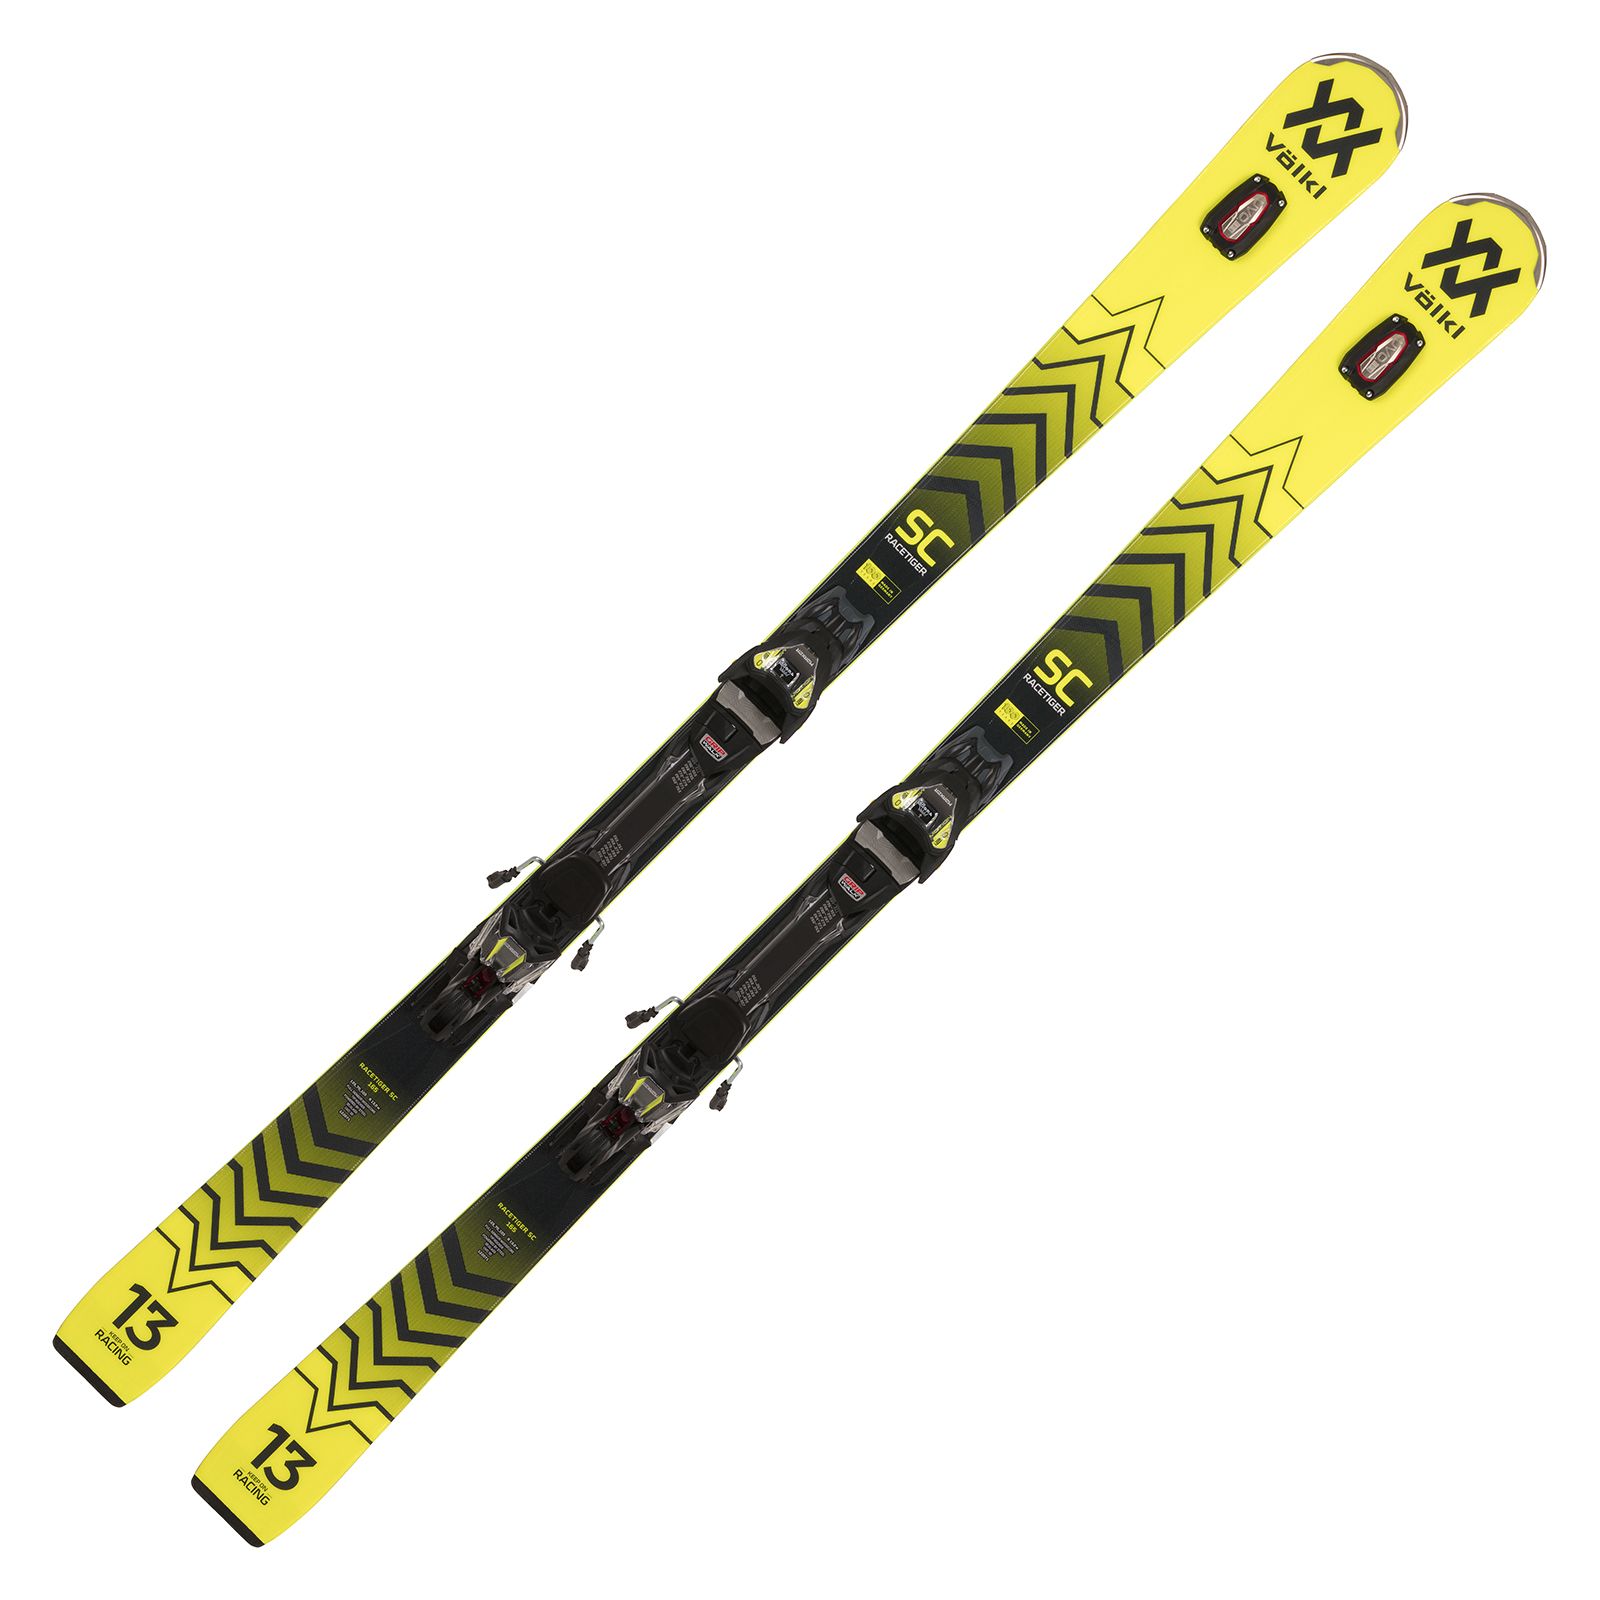 Völkl Racetiger SC yellow Slalomcarver Ski 2022/23